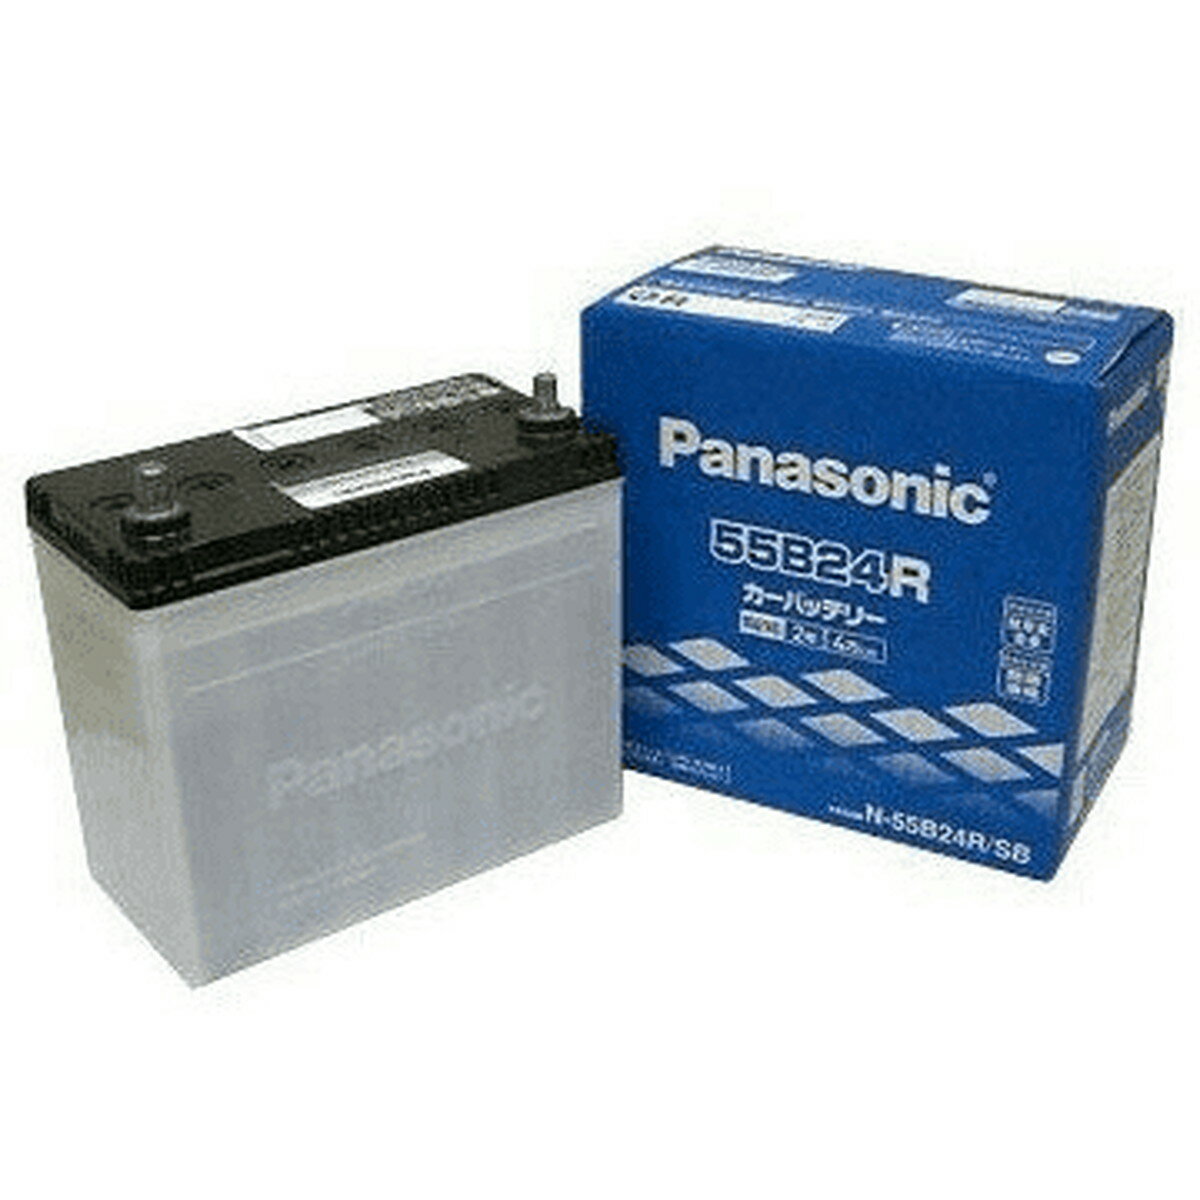 【在庫有 即納】 Panasonic/パナソニック 国産車バッテリー SBシリーズ N-55B24R